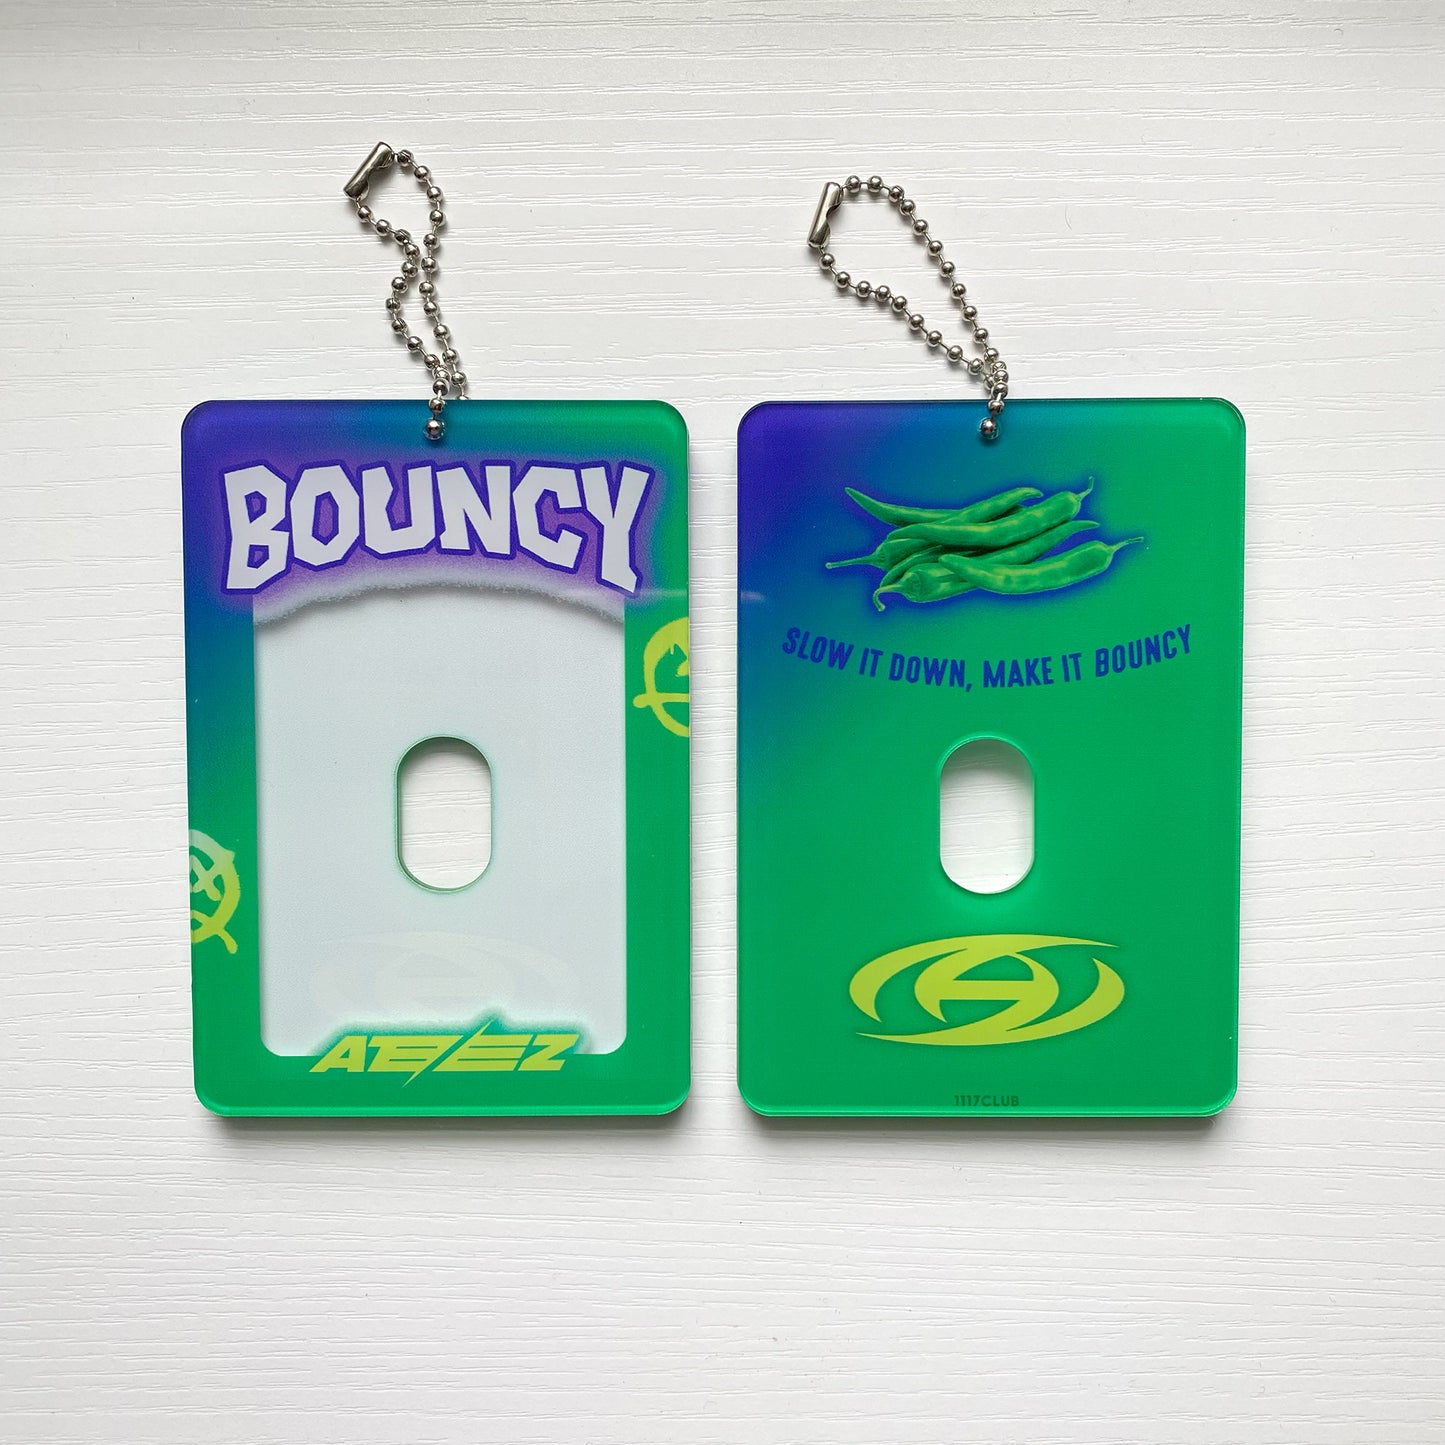 ATEEZ "Bouncy" Inspired Acrylic Photocard Holder